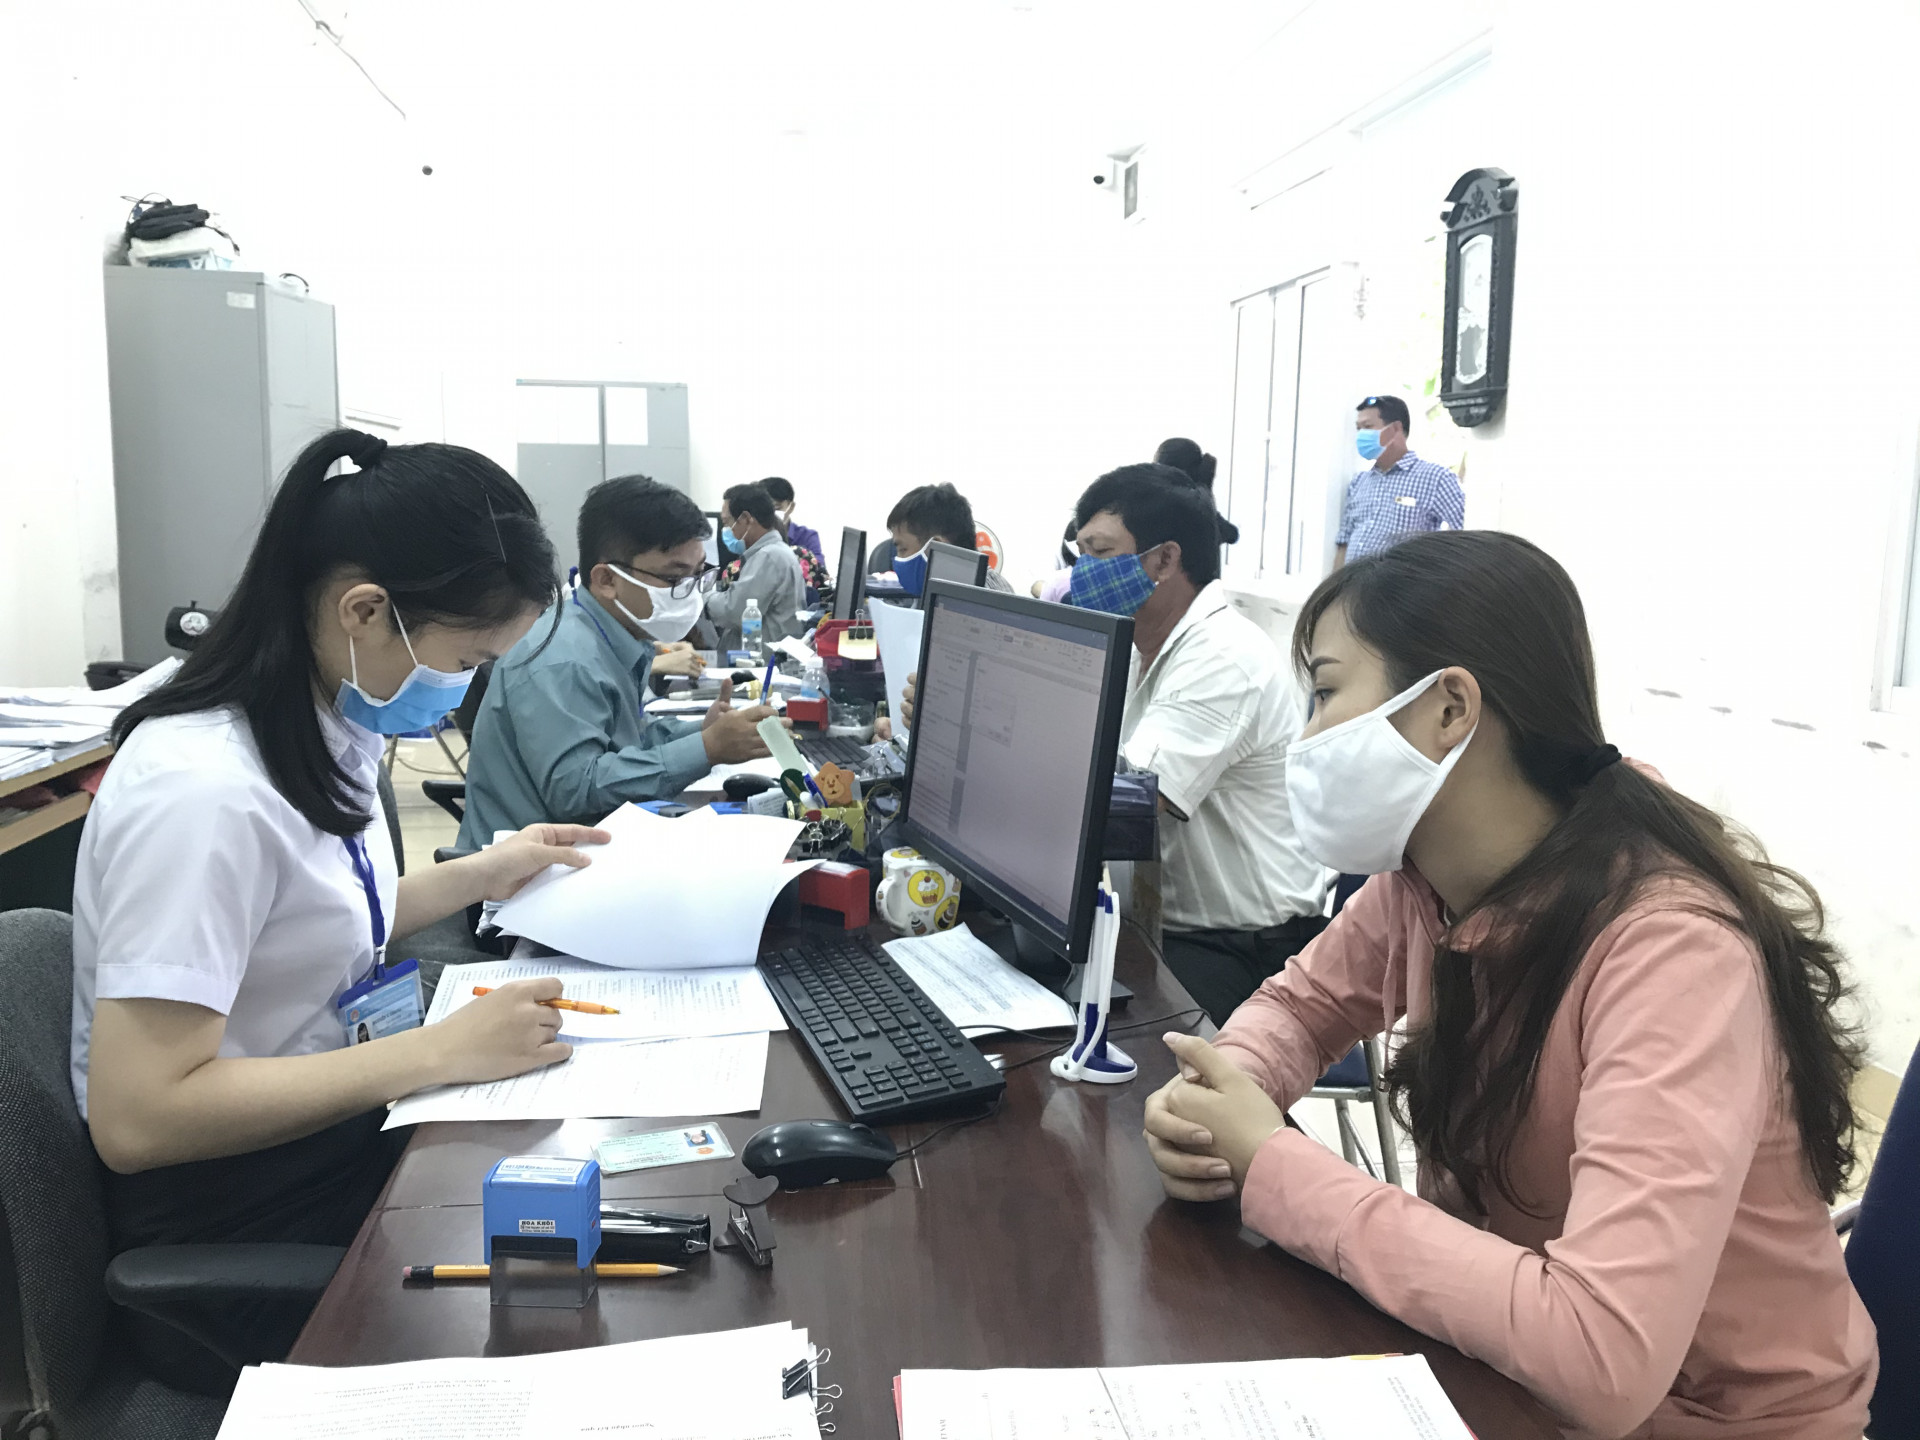 Trung tâm Dịch vụ việc làm Khánh Hòa tạm dừng giao dịch trực tiếp để phòng chống dịch Covid-19.